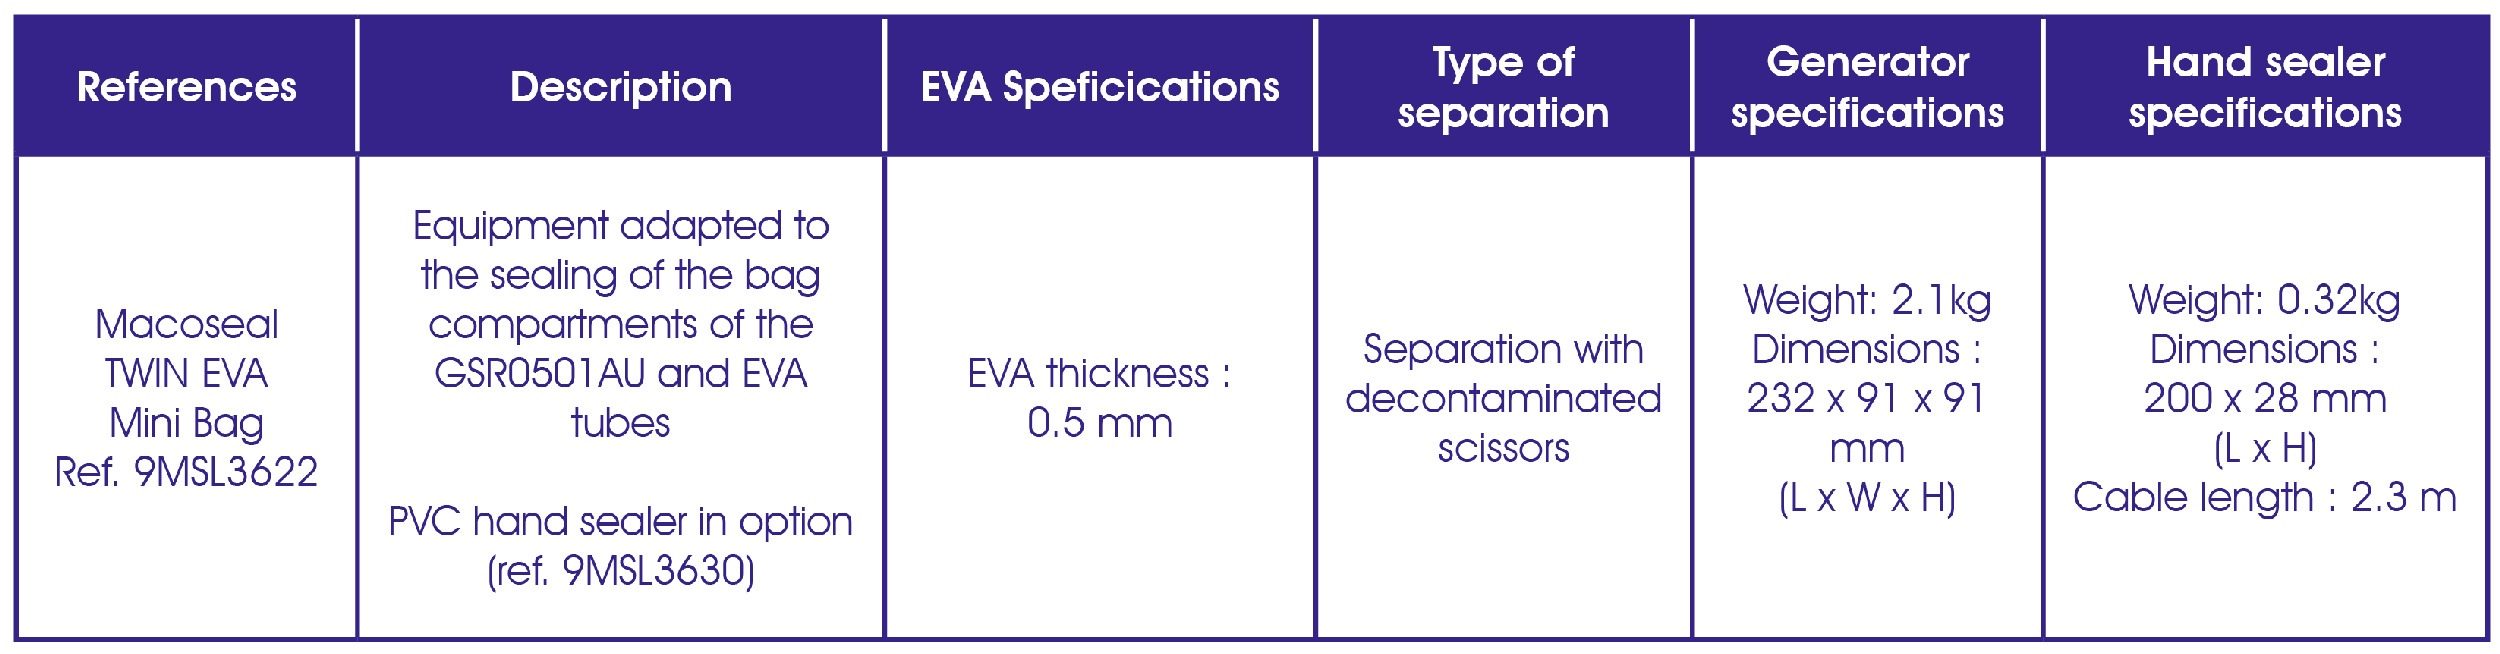 Macoseal twin eva mini bag - Reliable for EVA/PVC waterproofing - Macopharma